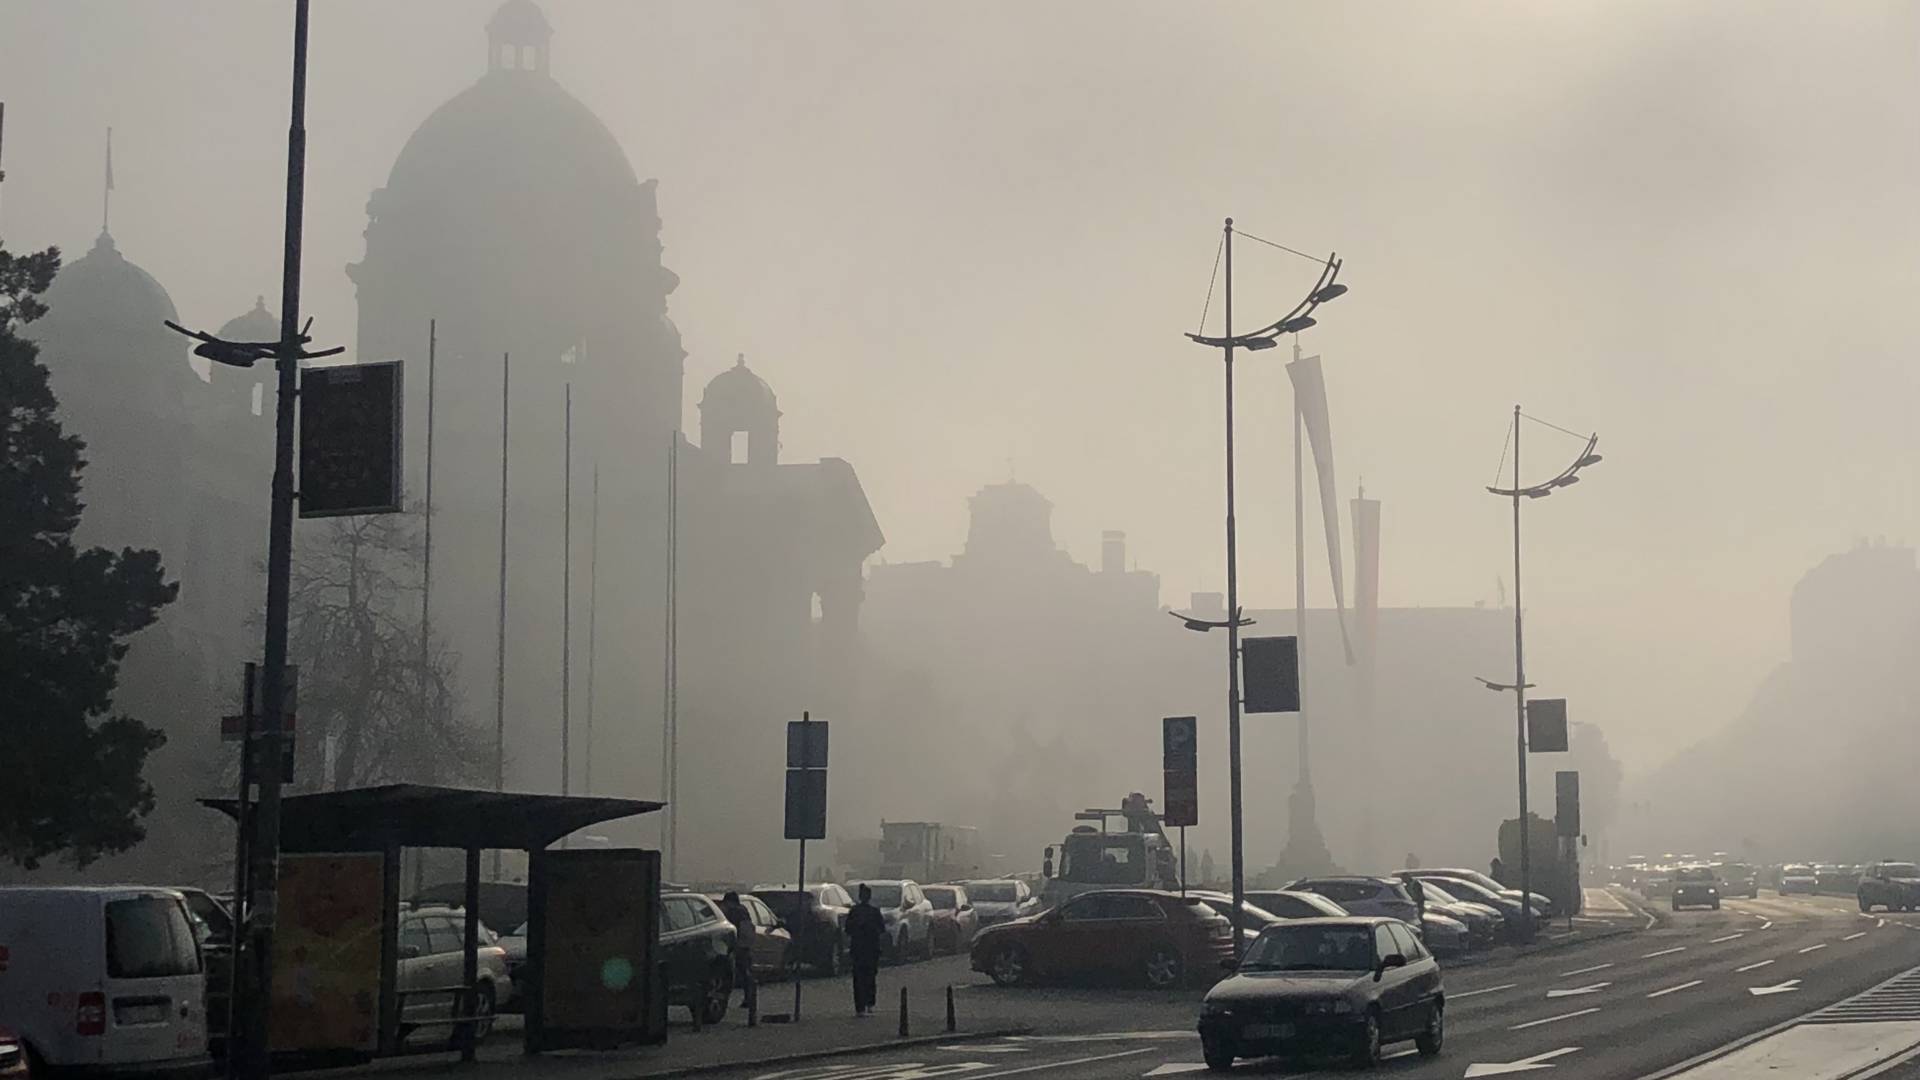 Sada vidimo šta udišemo - Beograđani od jutros prestravljeni od smoga koji se spustio na grad